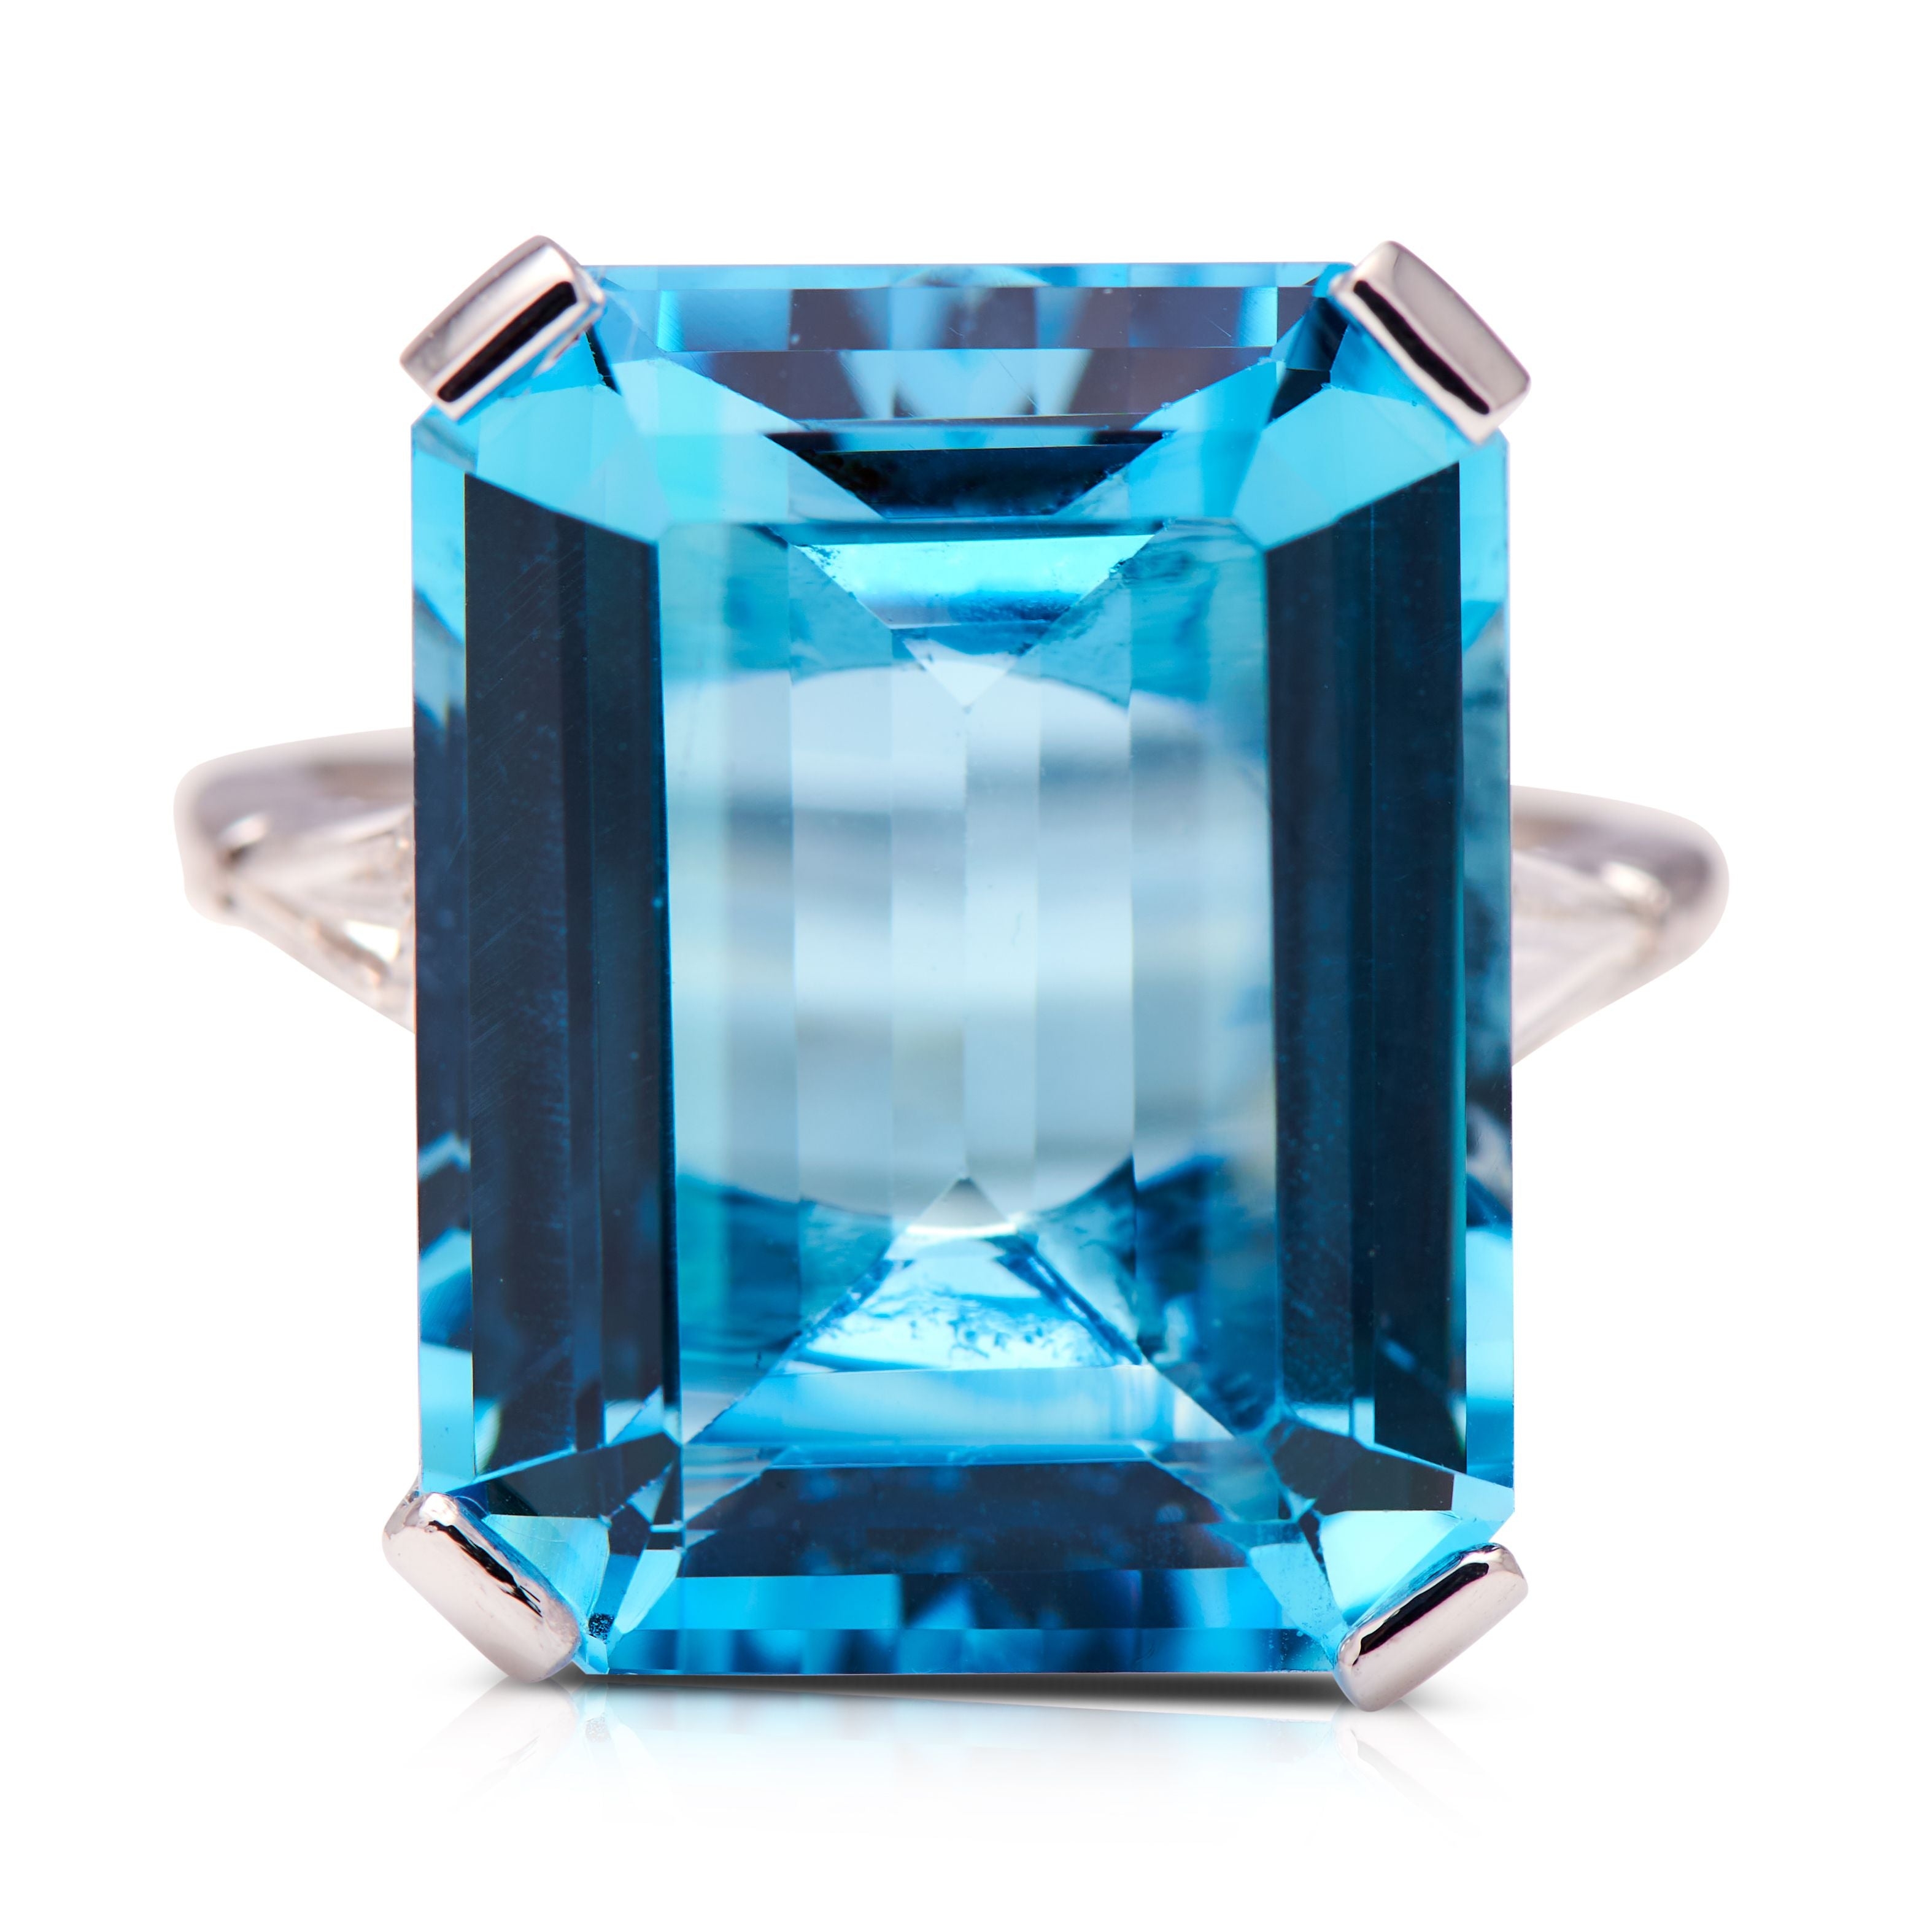 Art Deco, Platinum, Aquamarine and Diamond Ring – Vintage Ring – Antique Ring Boutique